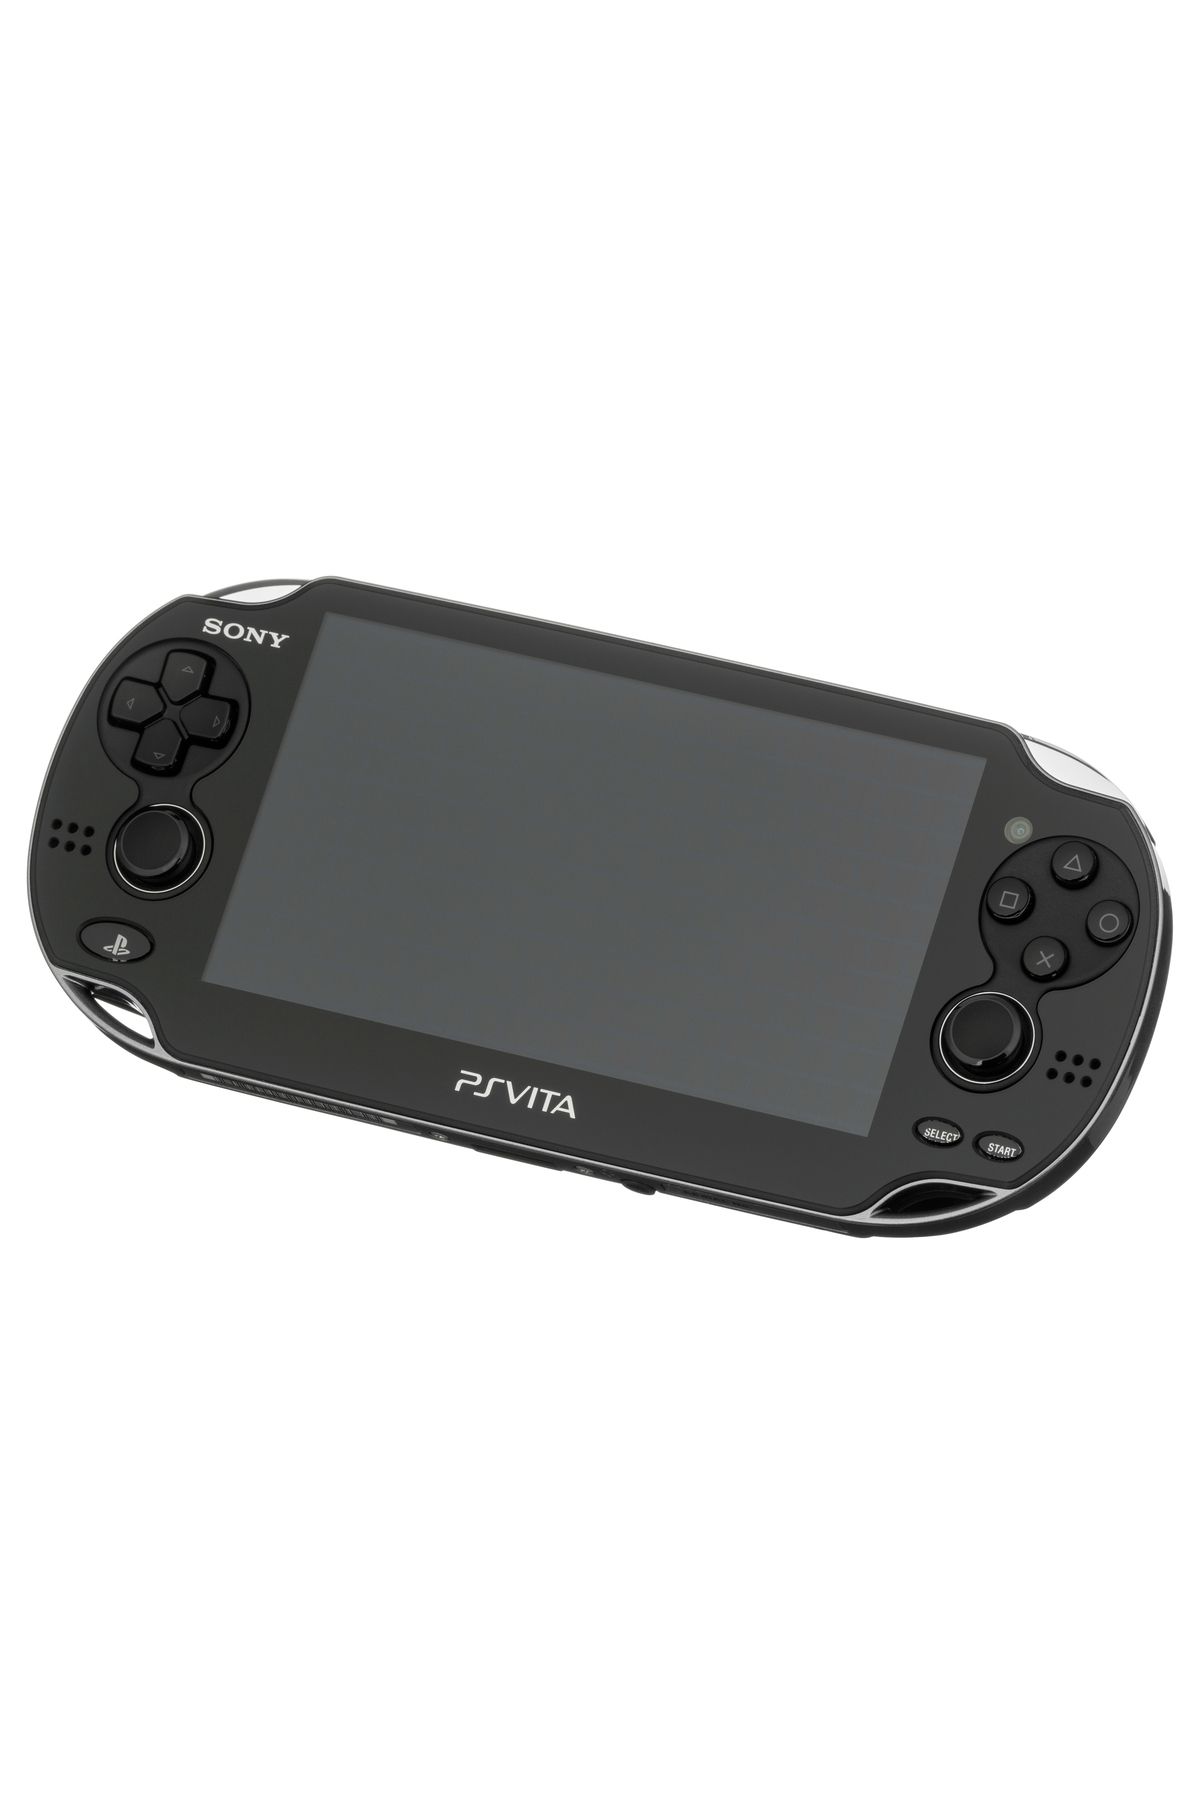 Sony Ps Vita 1004 Serisi Oyun Konsolu 64 GB Hafıza Kartı + Teşhir Ürün